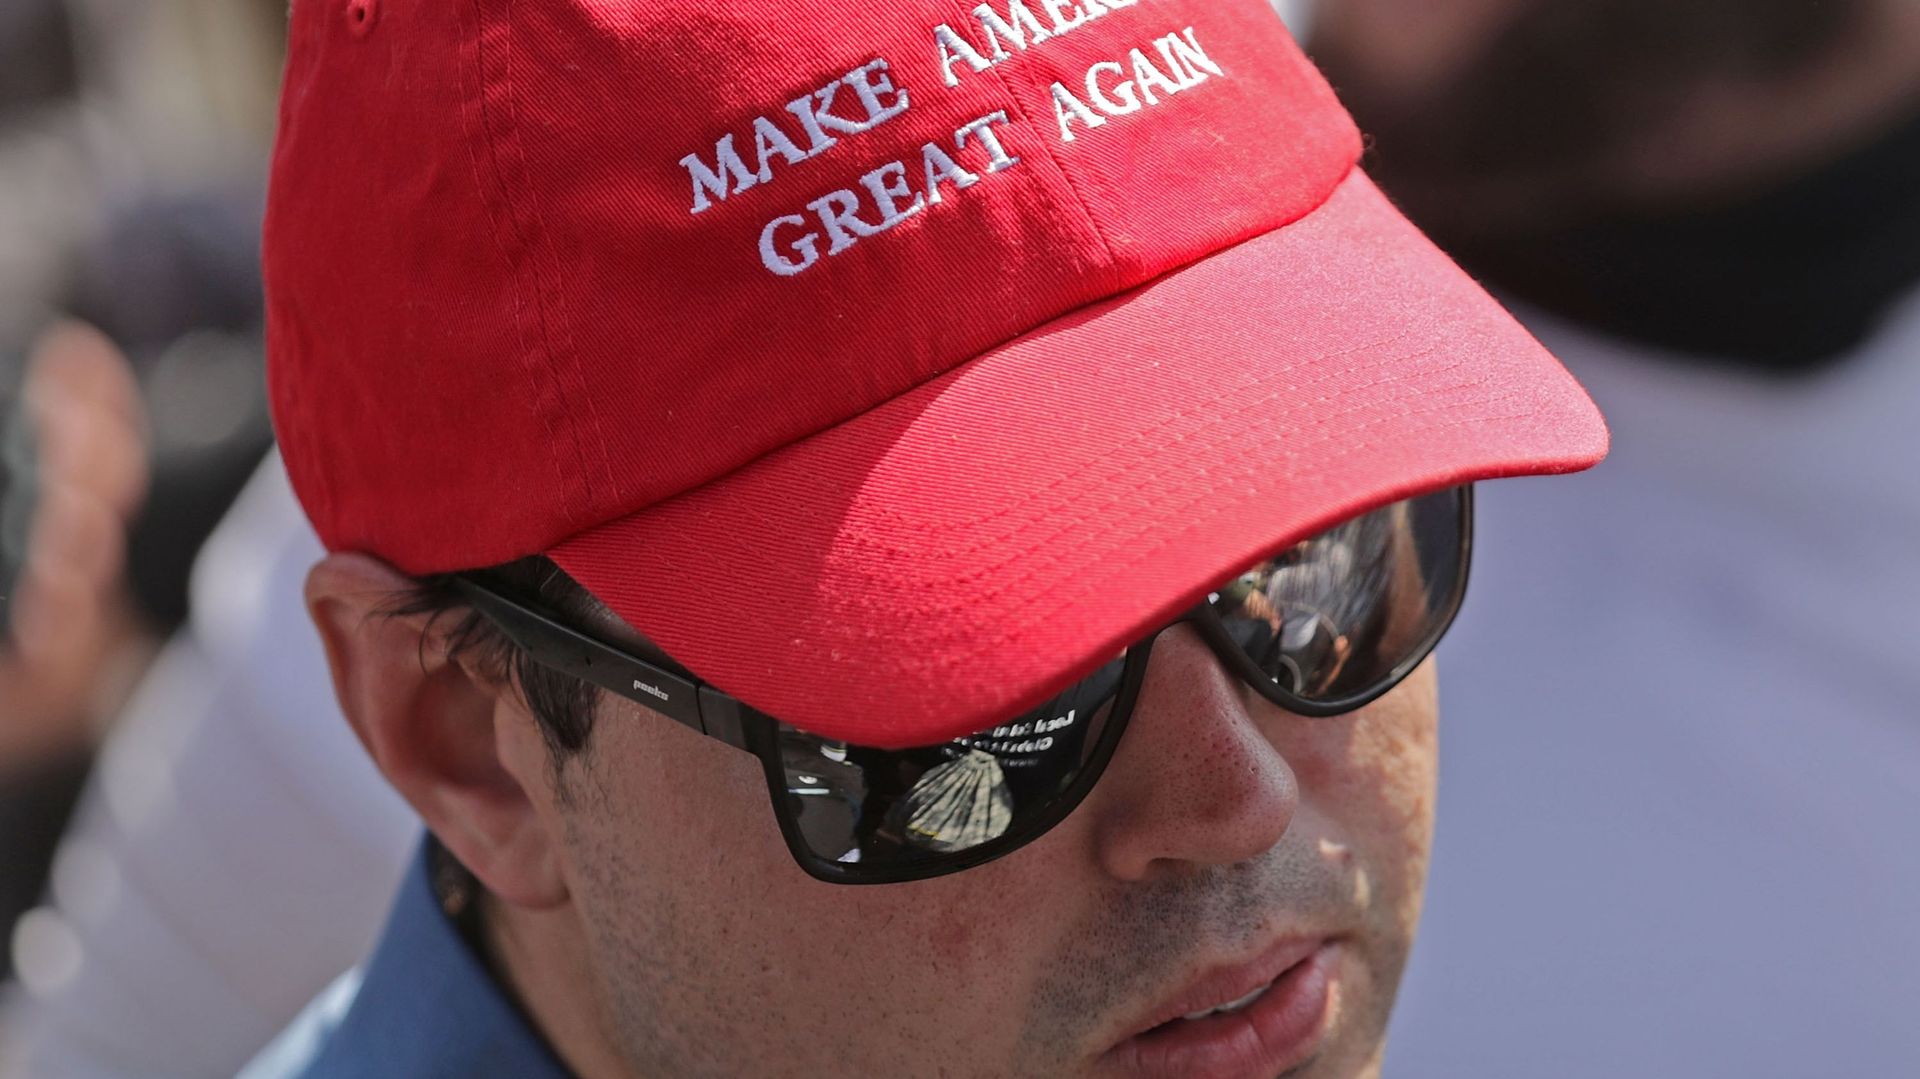 Le prix des casquettes "Make America Great Again" pourrait doubler à cause des tarifs douaniers américains